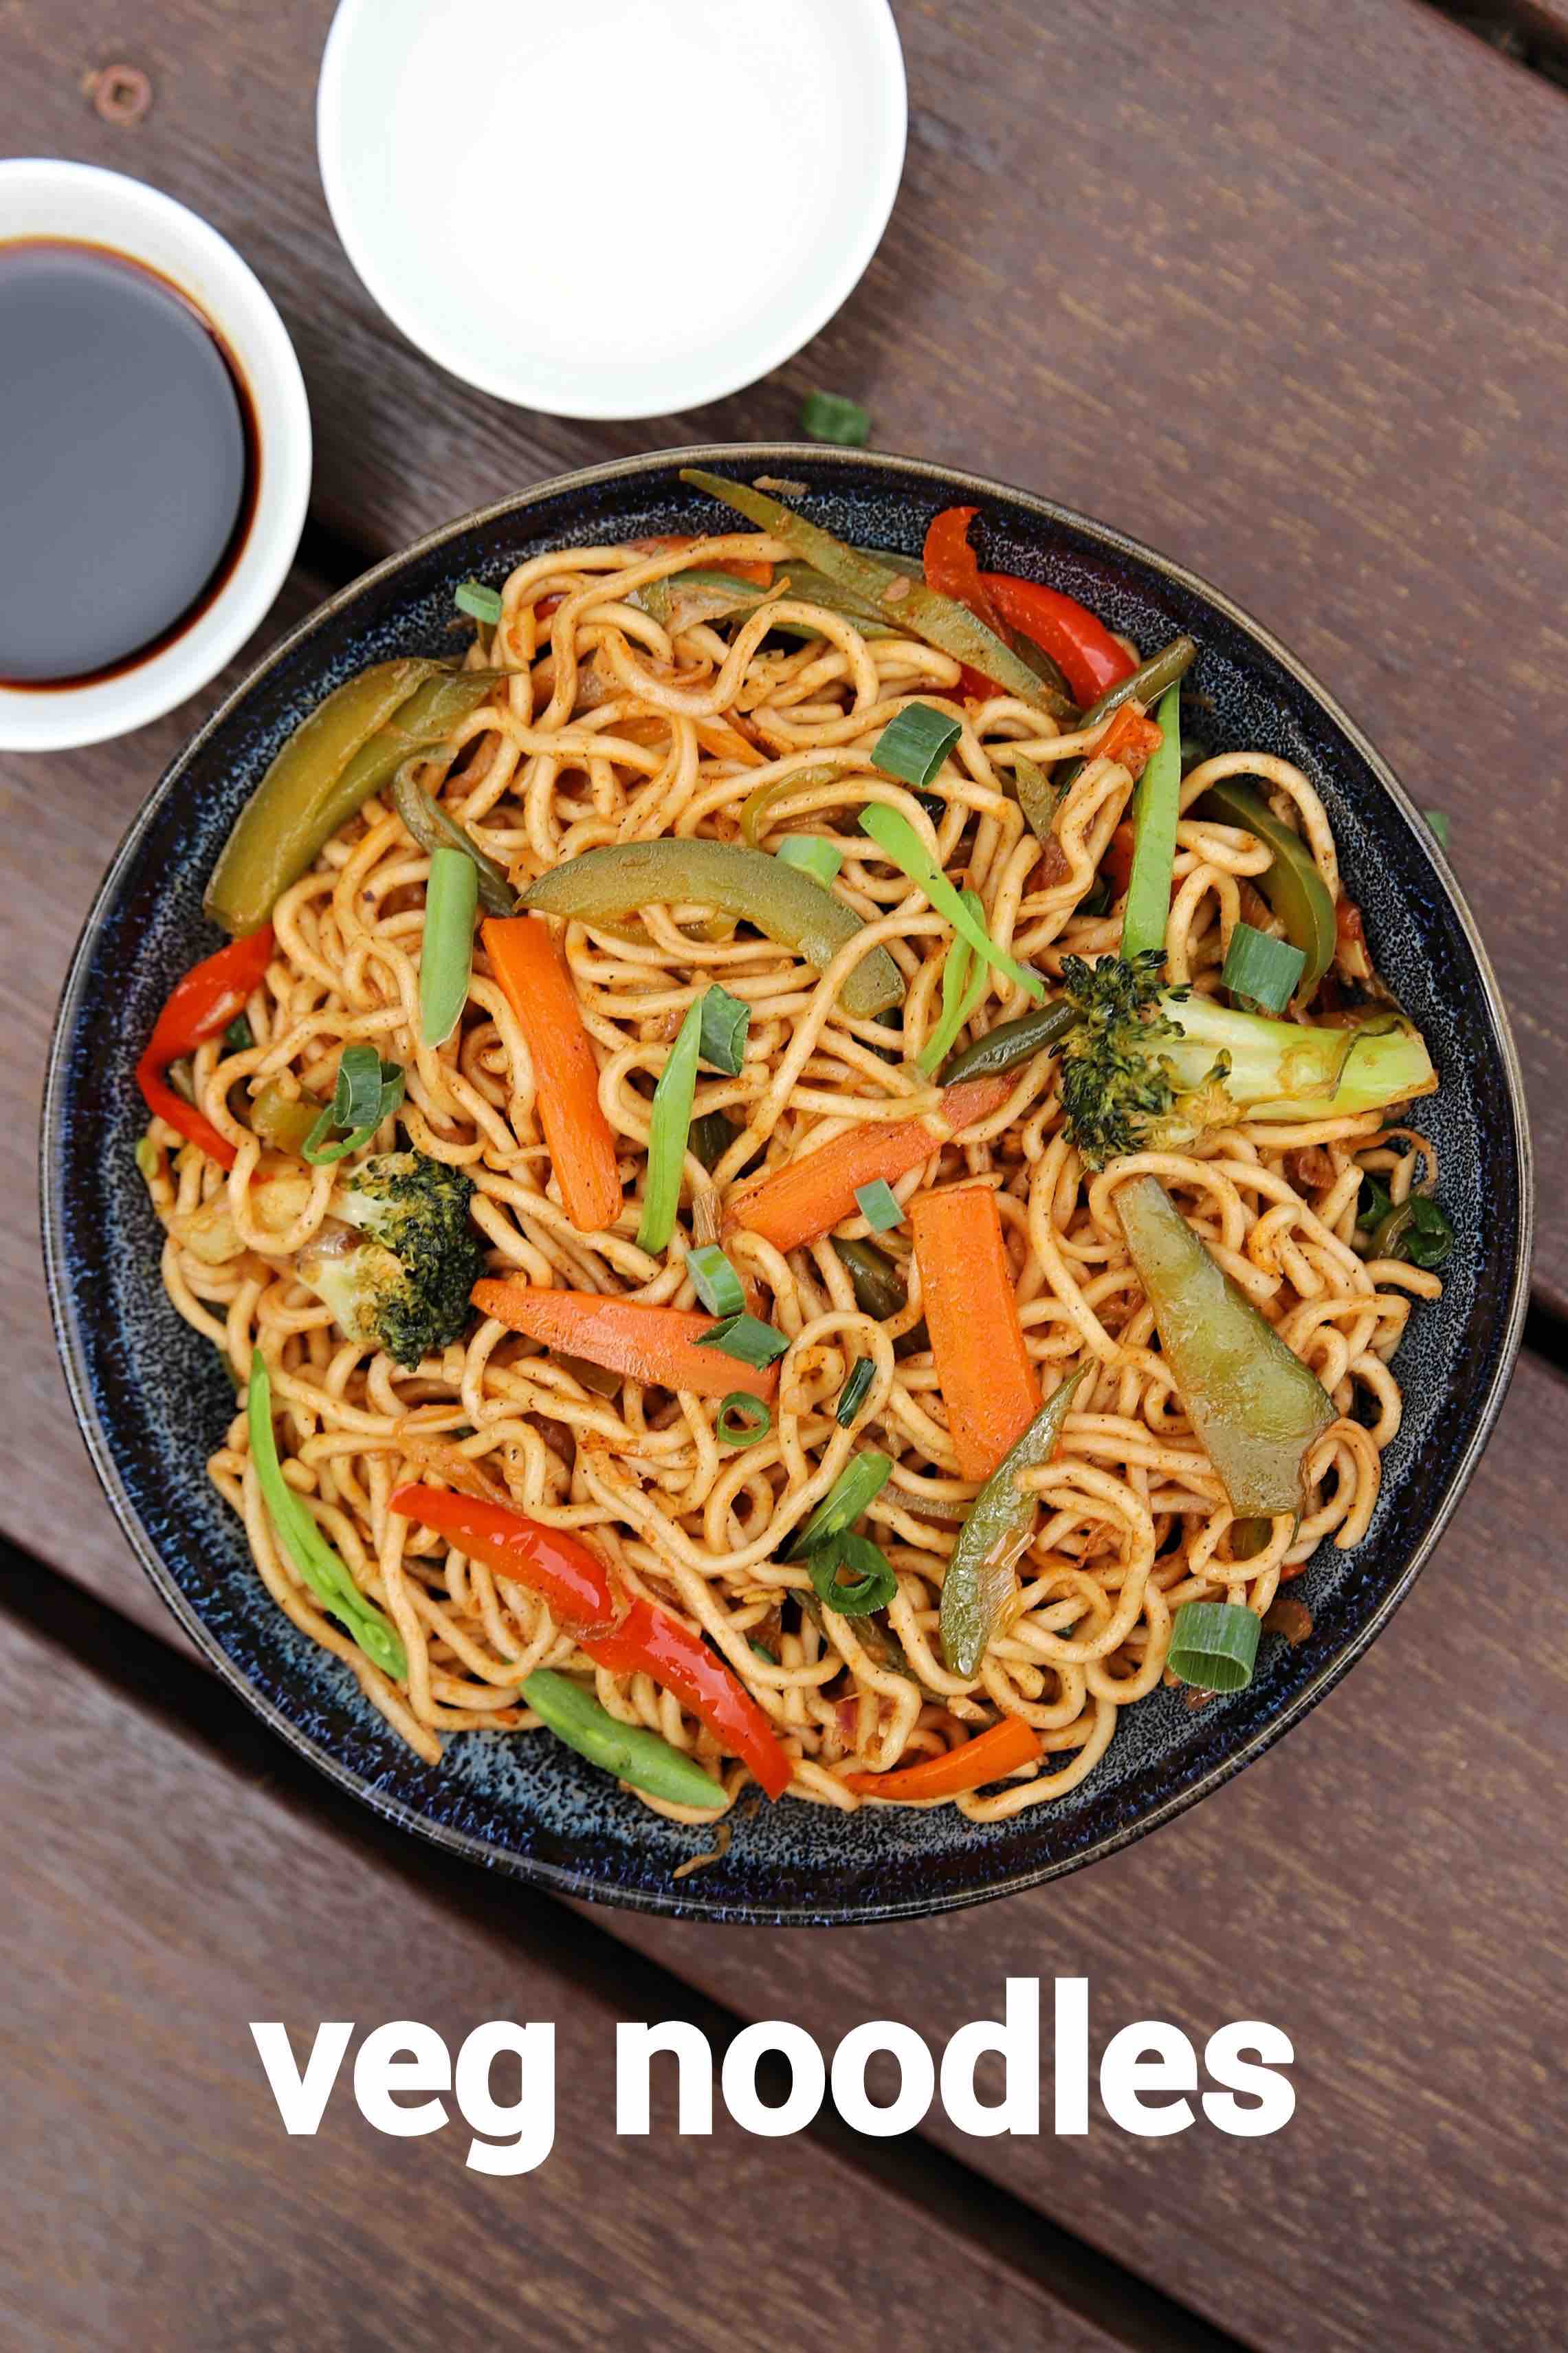 veg noodles recipe  vegetable noodles  how to make noodles recipe